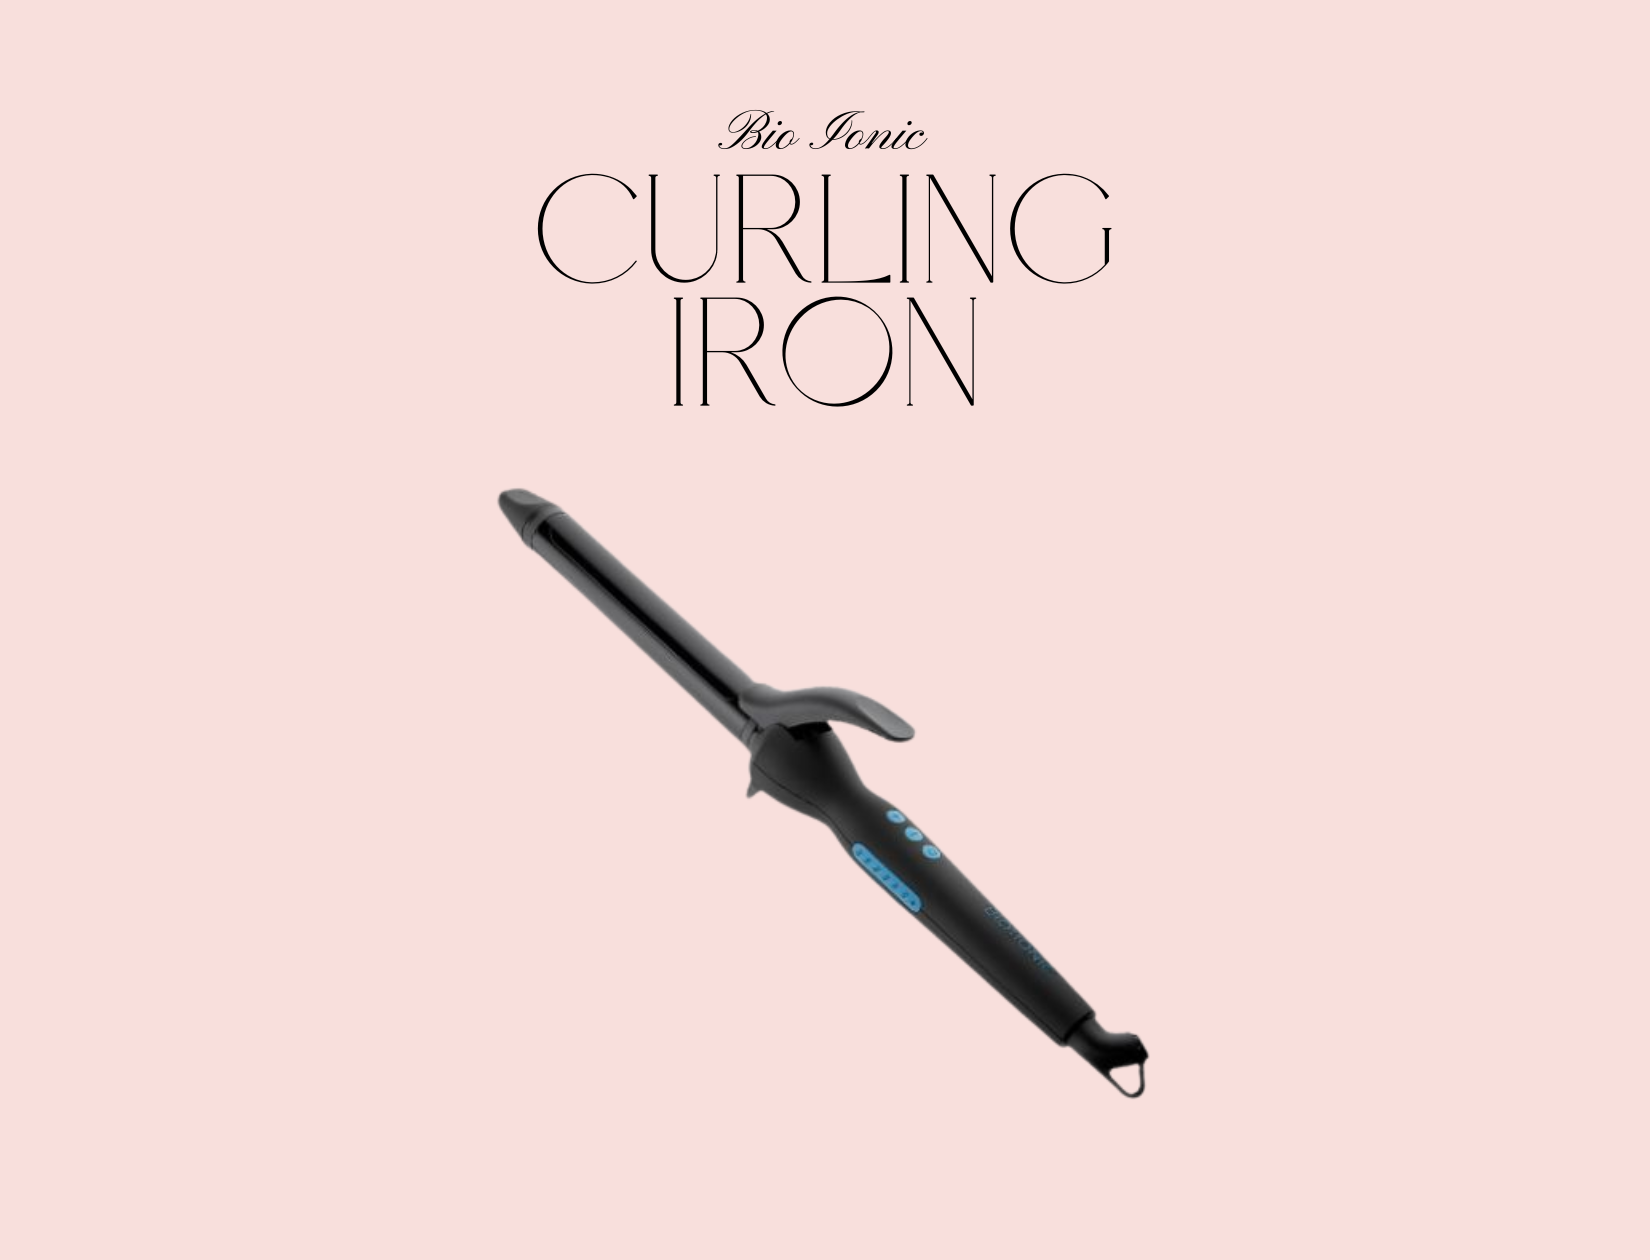 bio ionic curling iron nanoionic